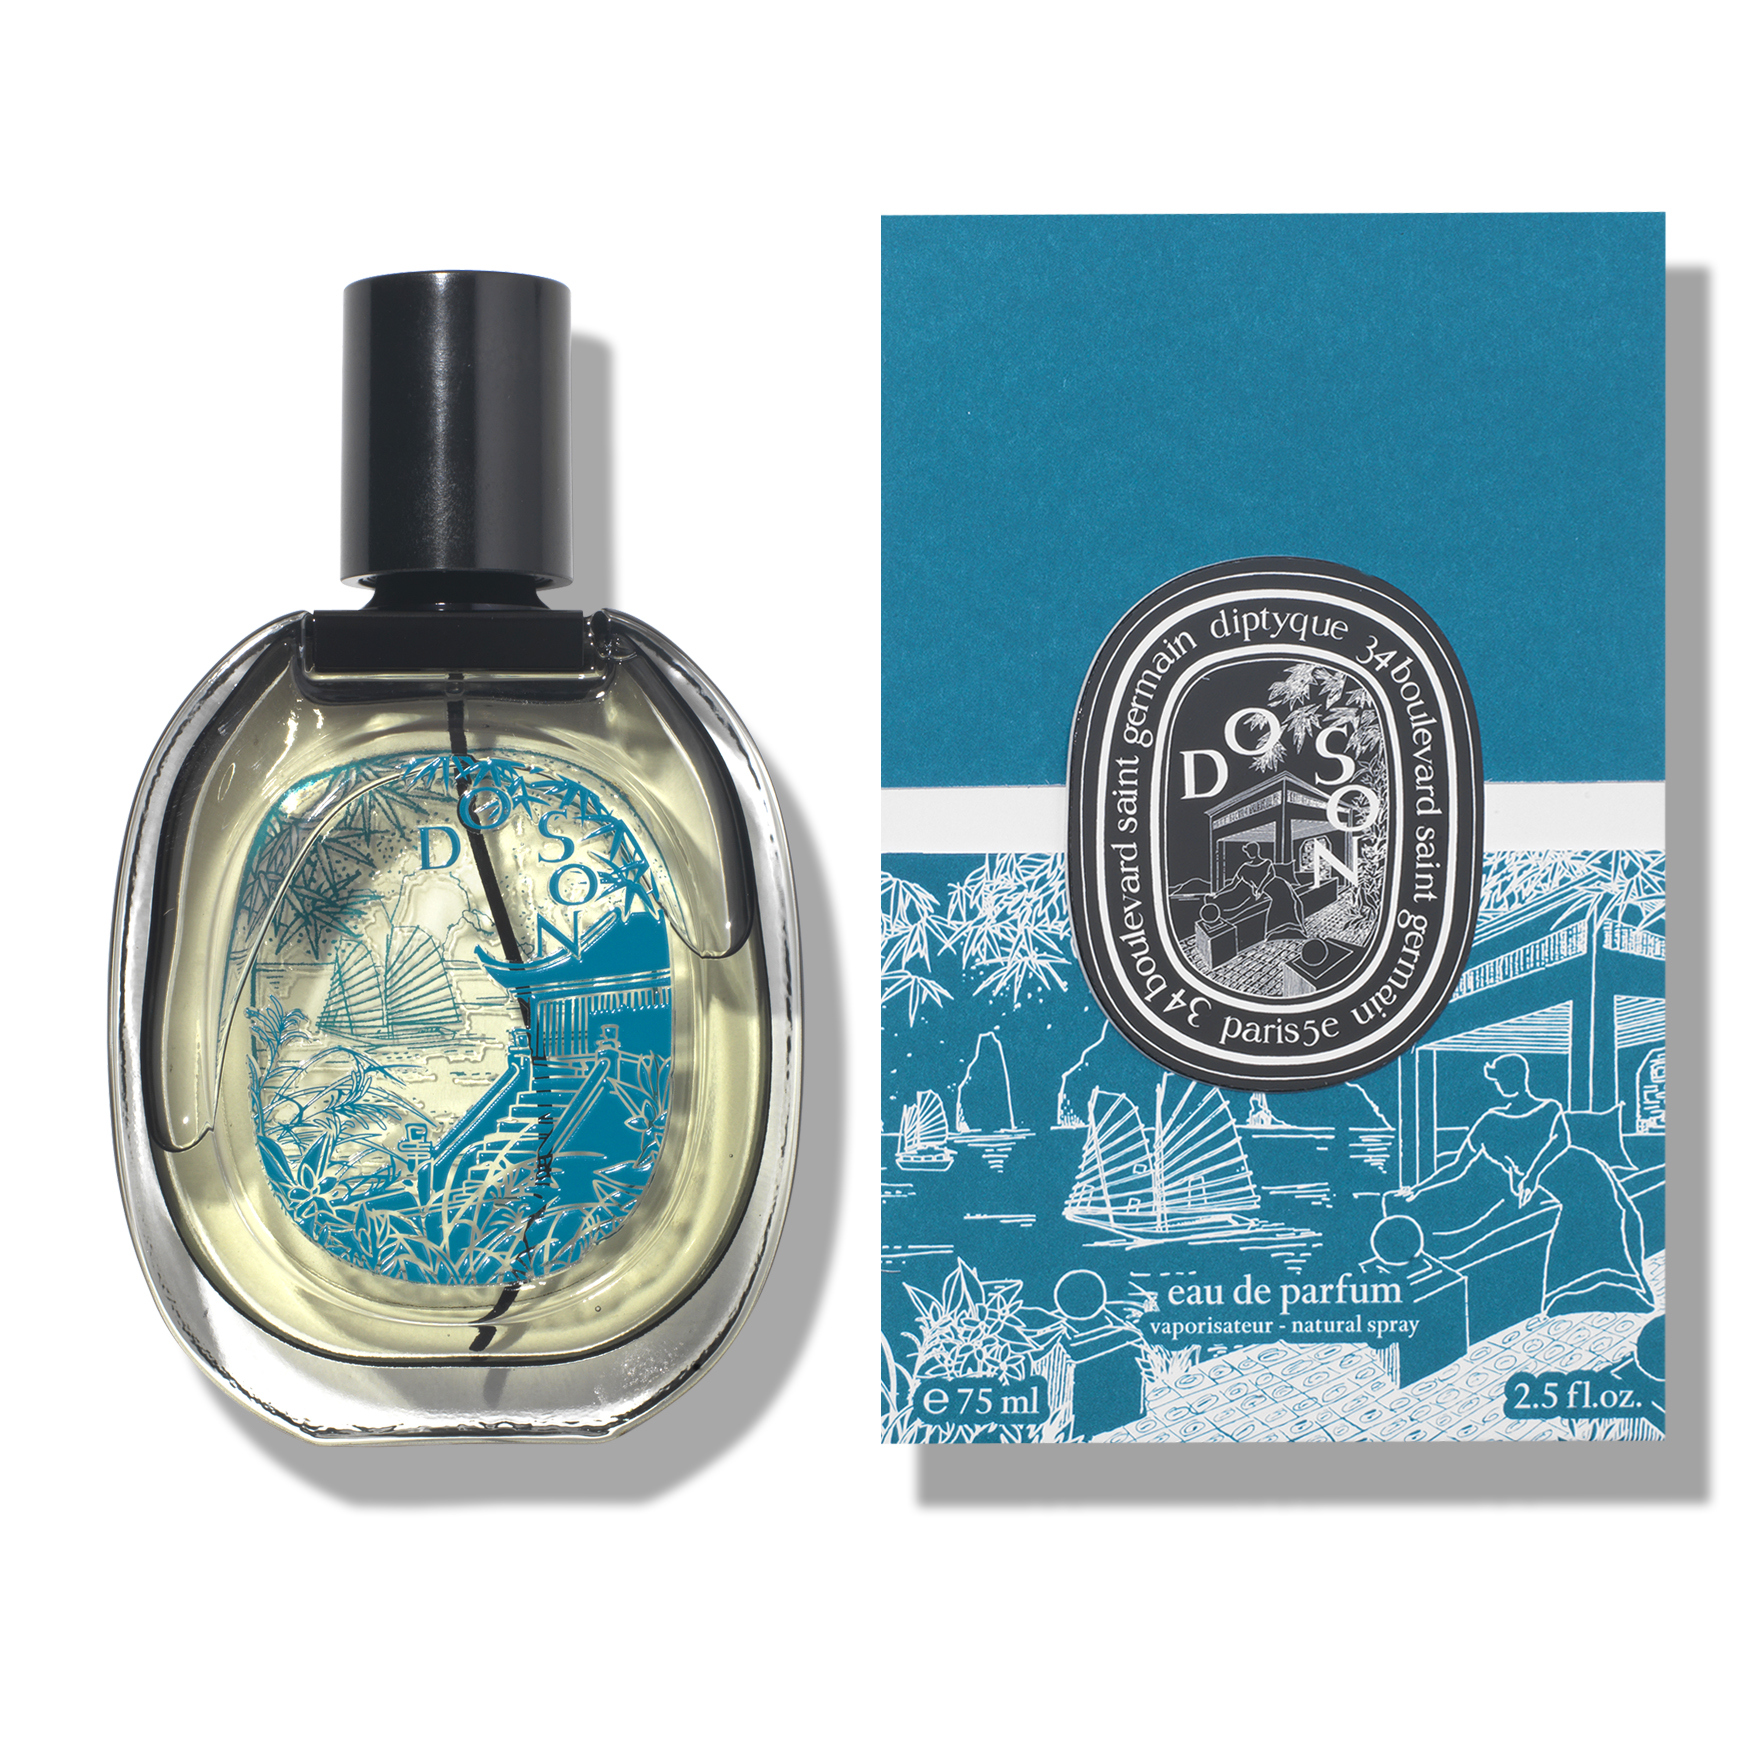 Diptyque Do Son Eau de Parfum Limited Edition | Space NK